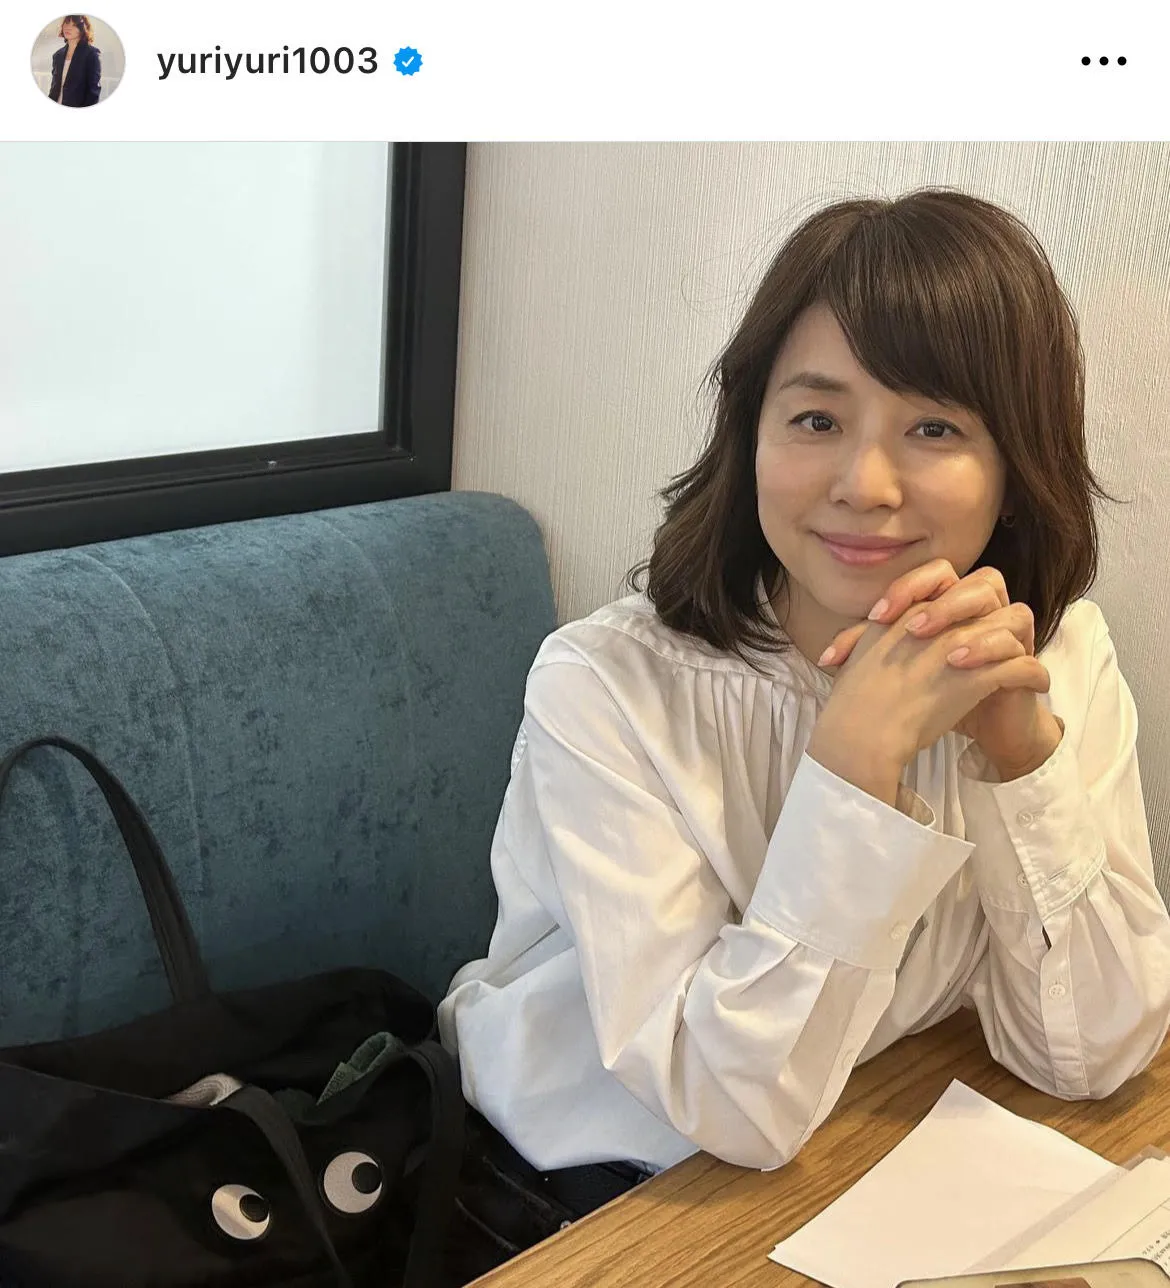  ※石田ゆり子公式Instagram(yuriyuri1003)より